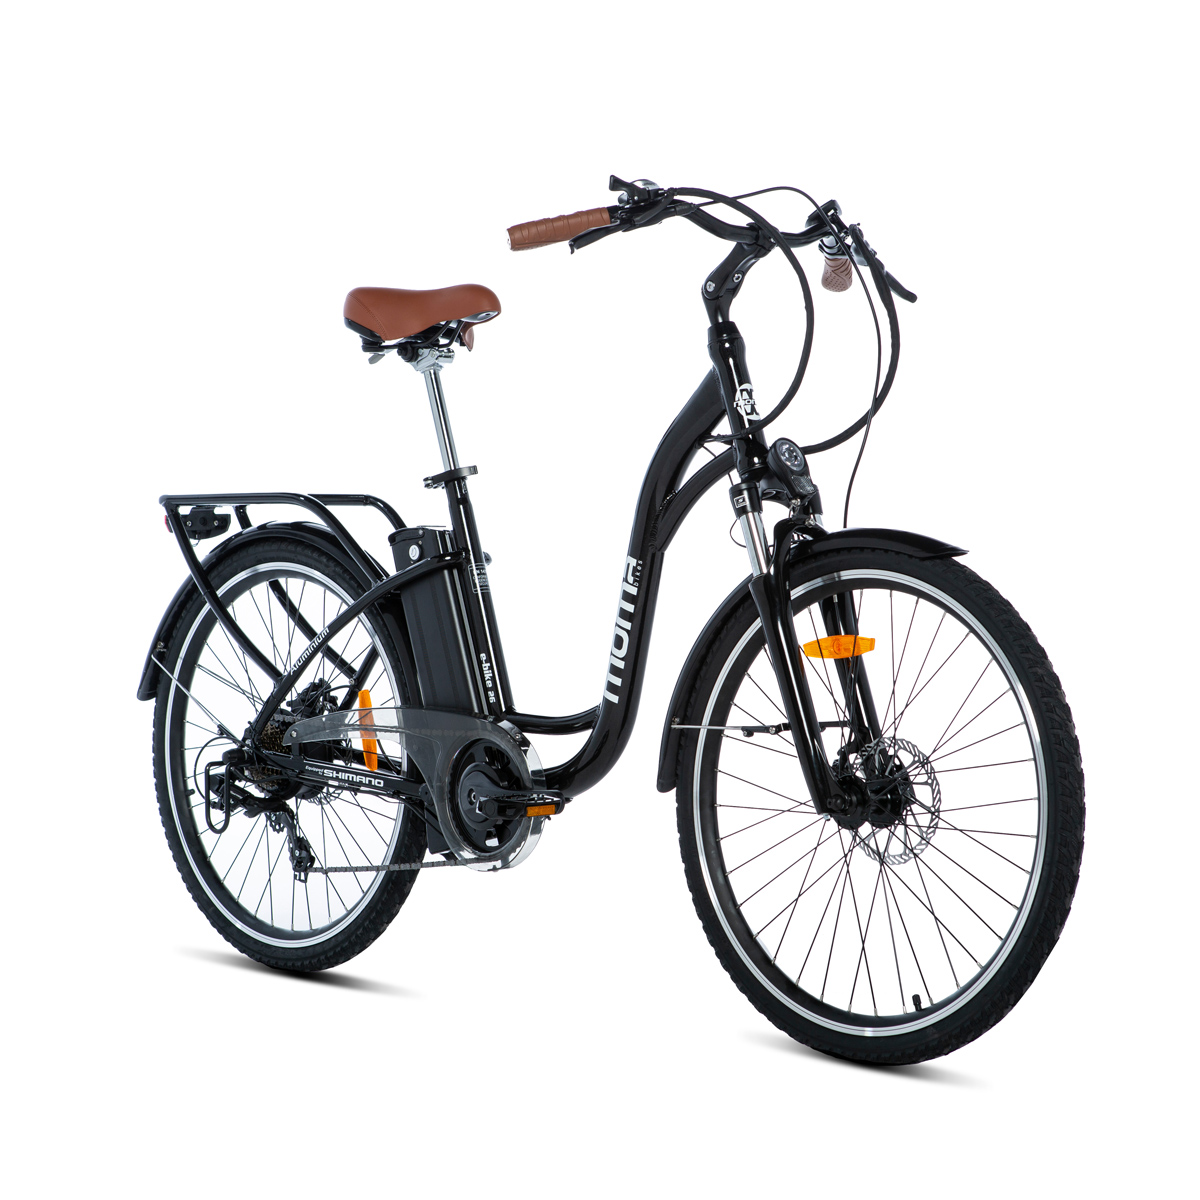 Moma Bikes Bicicleta electrica aluminio shimano 7v frenos de disco batería litio 36v 16ah ebike 26.2 negra e26.2